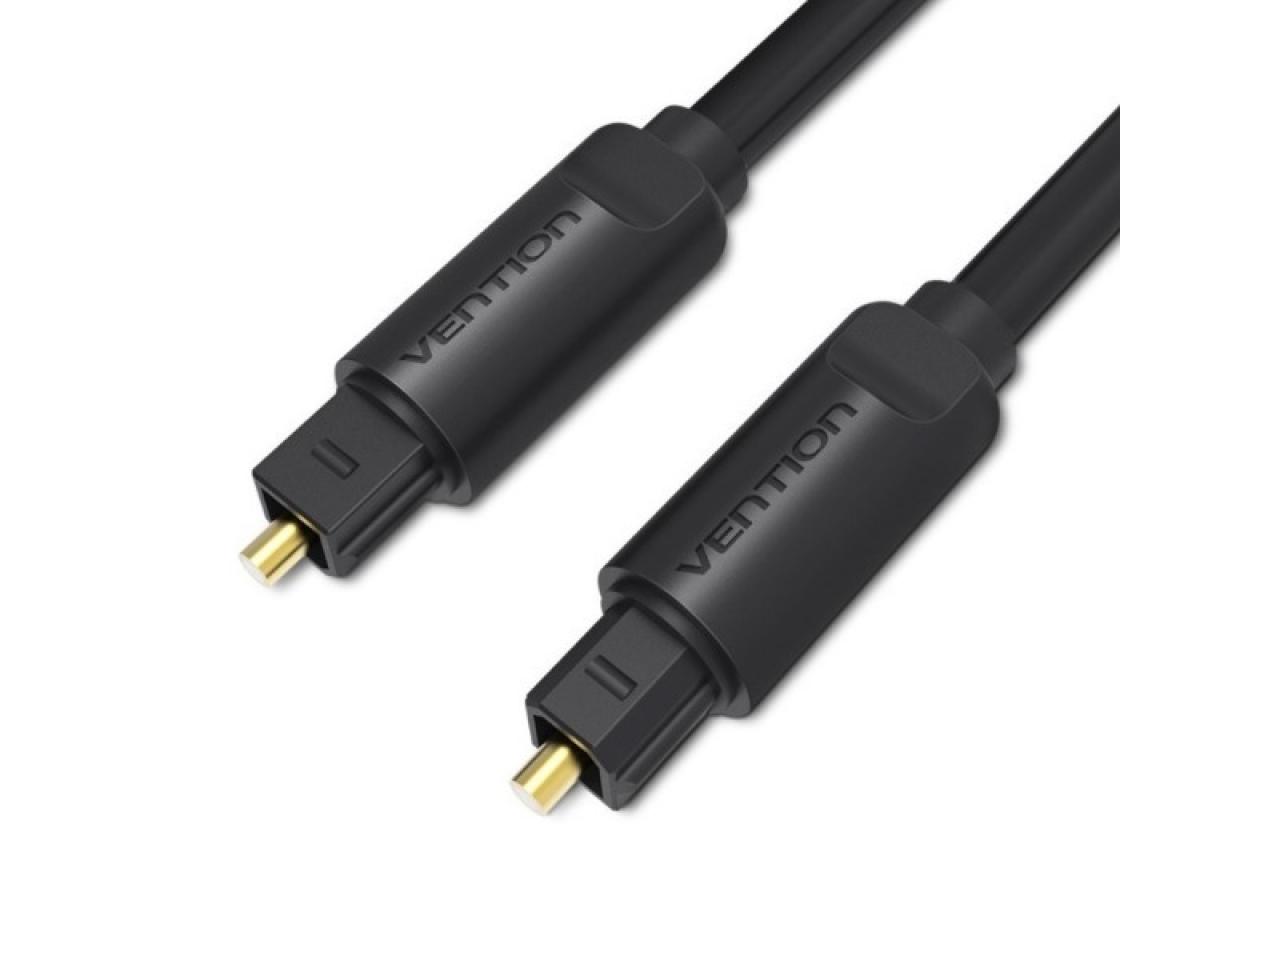 Cable Óptico, Audio Digital de Fibra Óptica Toslink 1.5mt Dorado